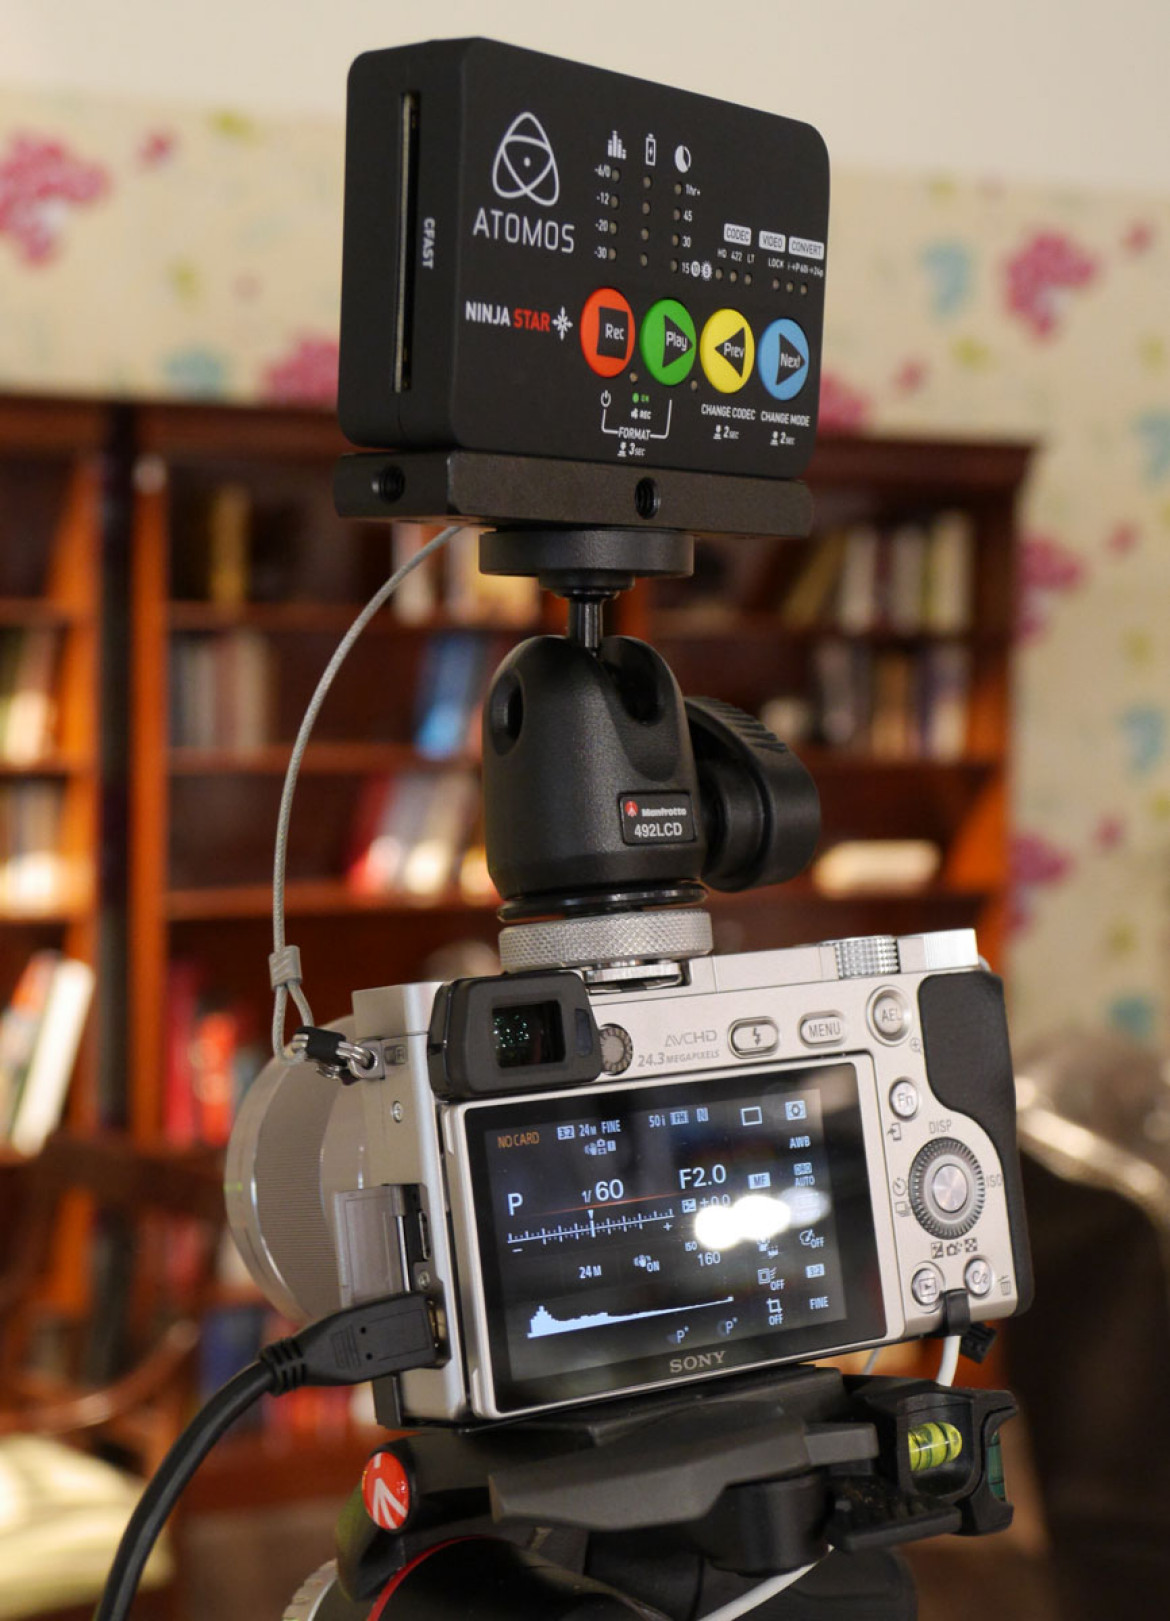 malutki A5100 w roli półprofesjonalnej kamery filmowej